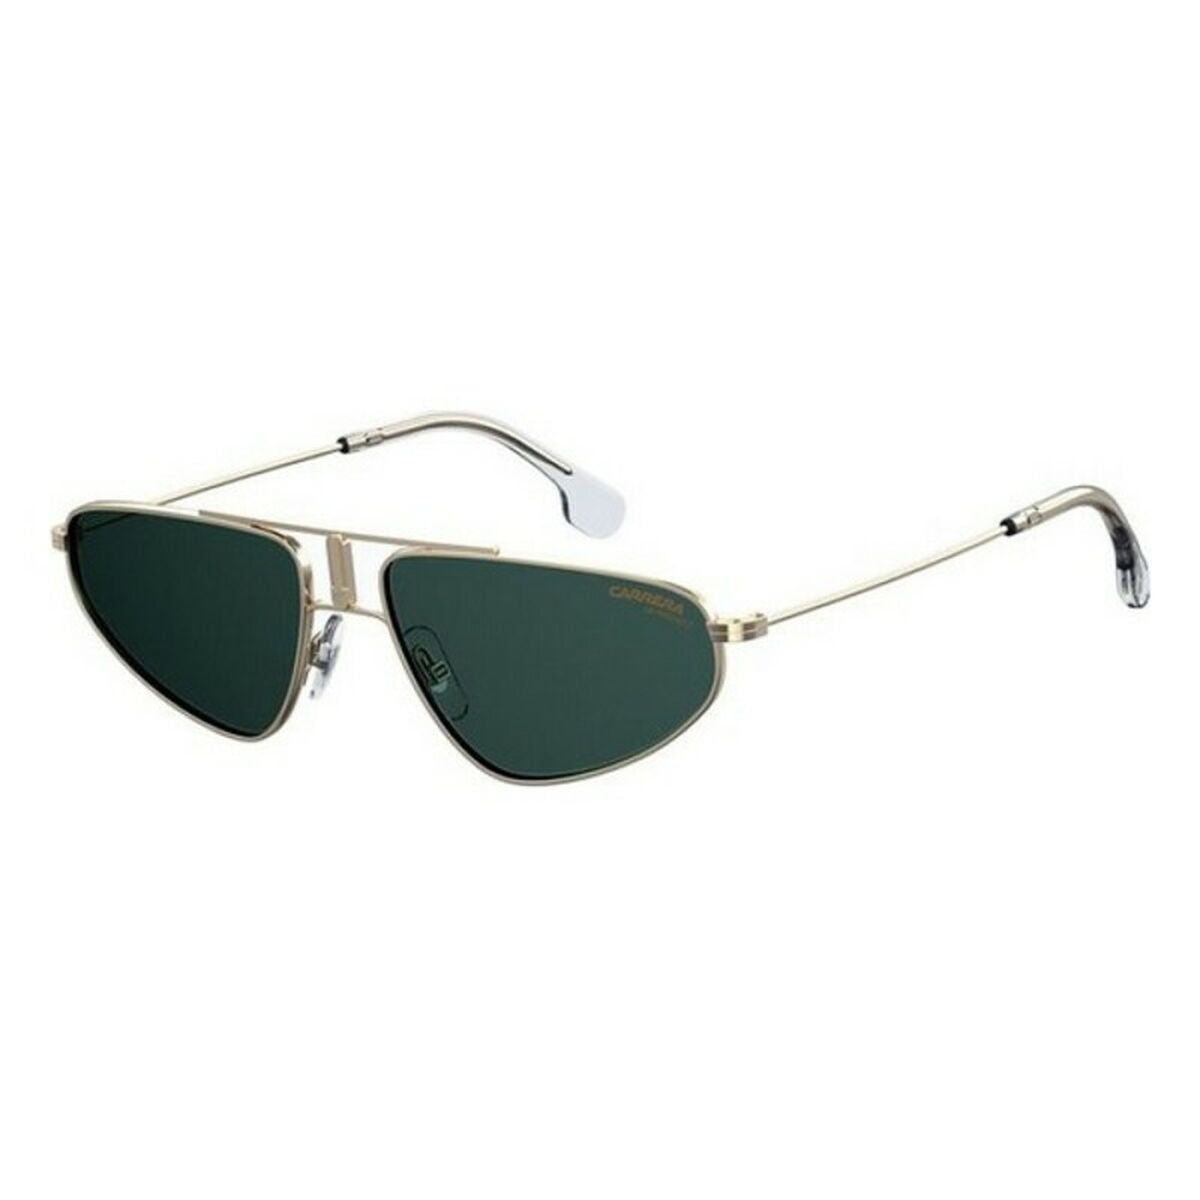 Kaufe Damensonnenbrille Carrera 1021-S-PEF-QT ø 58 mm bei AWK Flagship um € 63.00